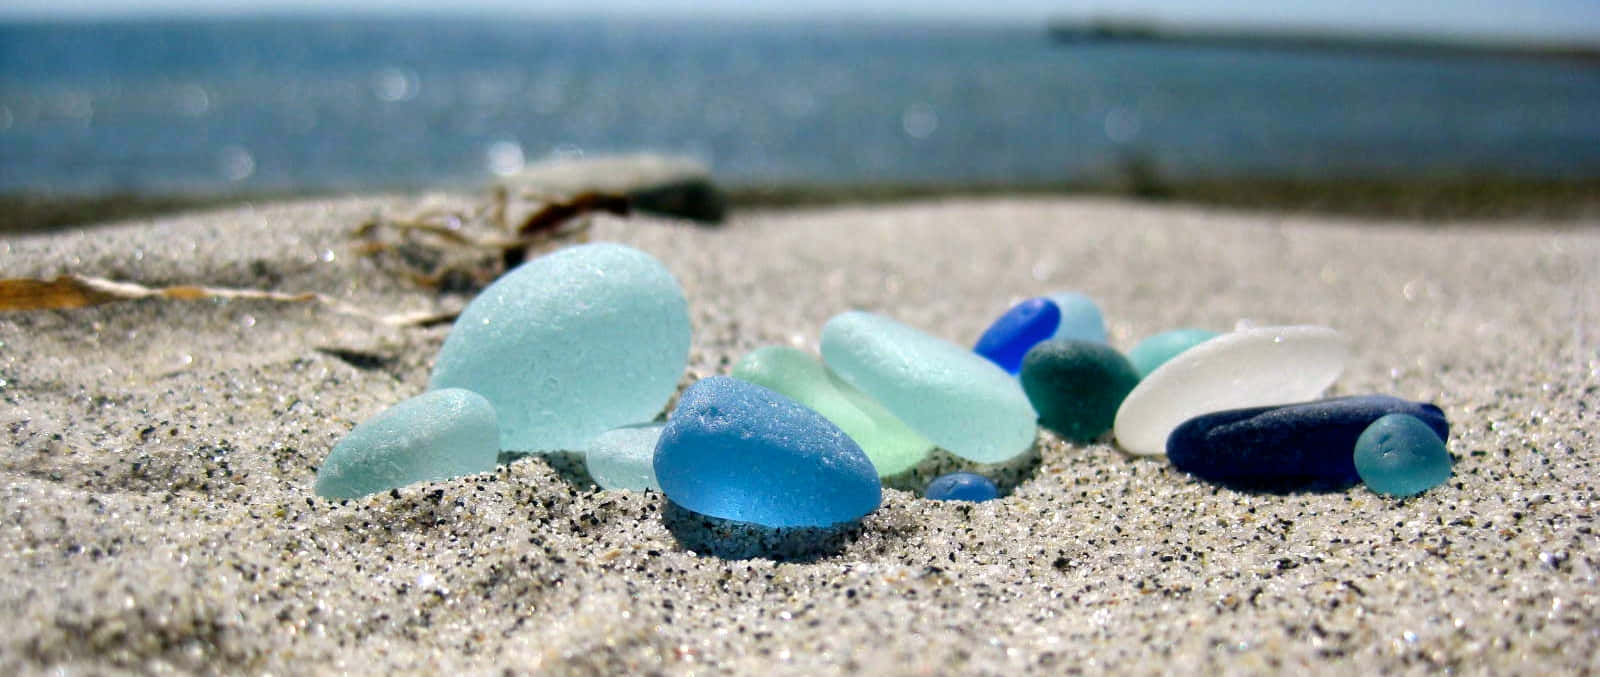 Beach Sea Glass Picture